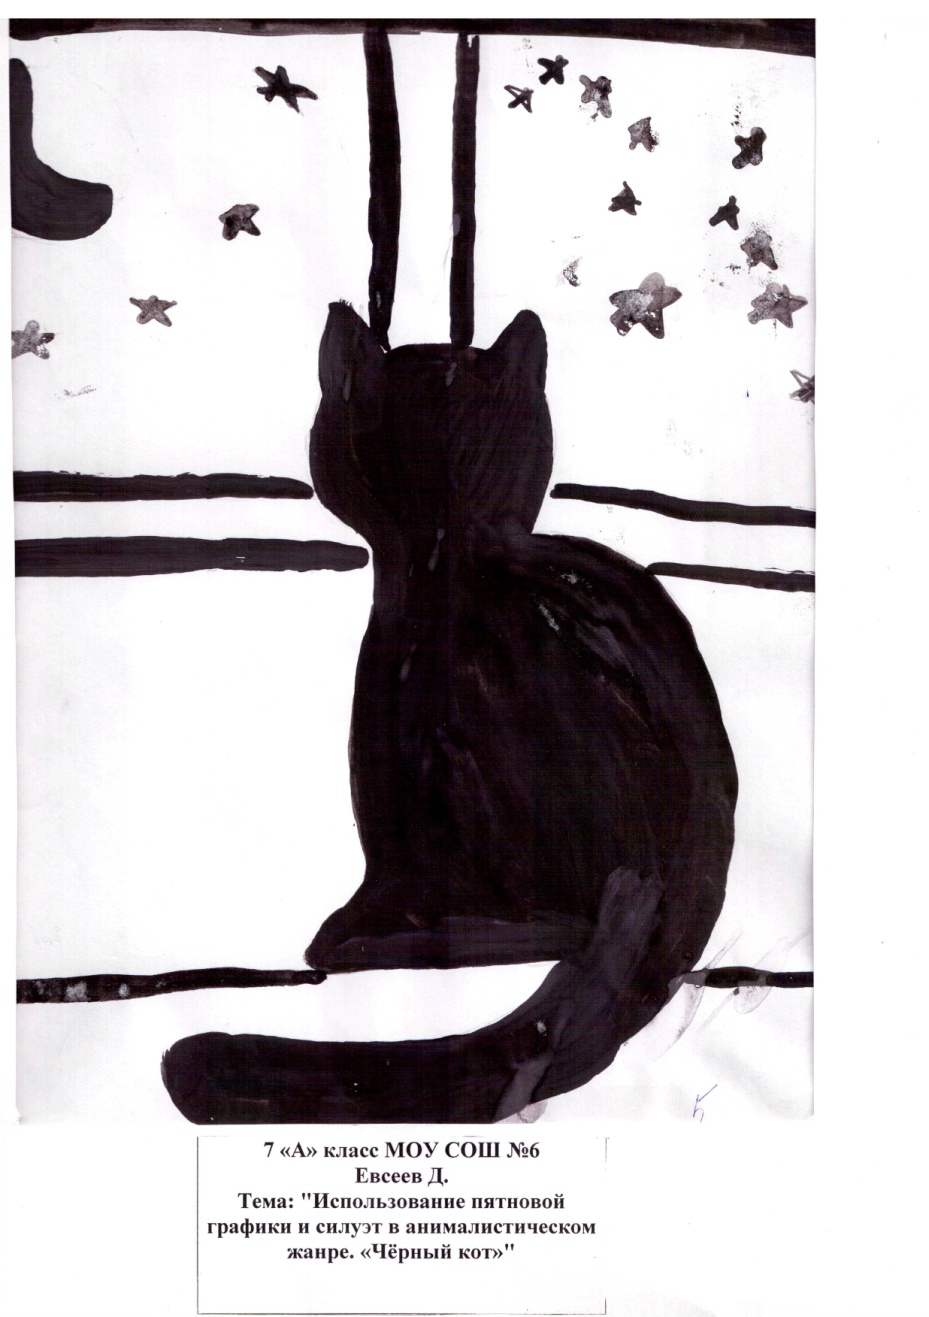 Конспект урока Использование пятновой графики и силуэт в анималистическом жанре. «Чёрный кот»